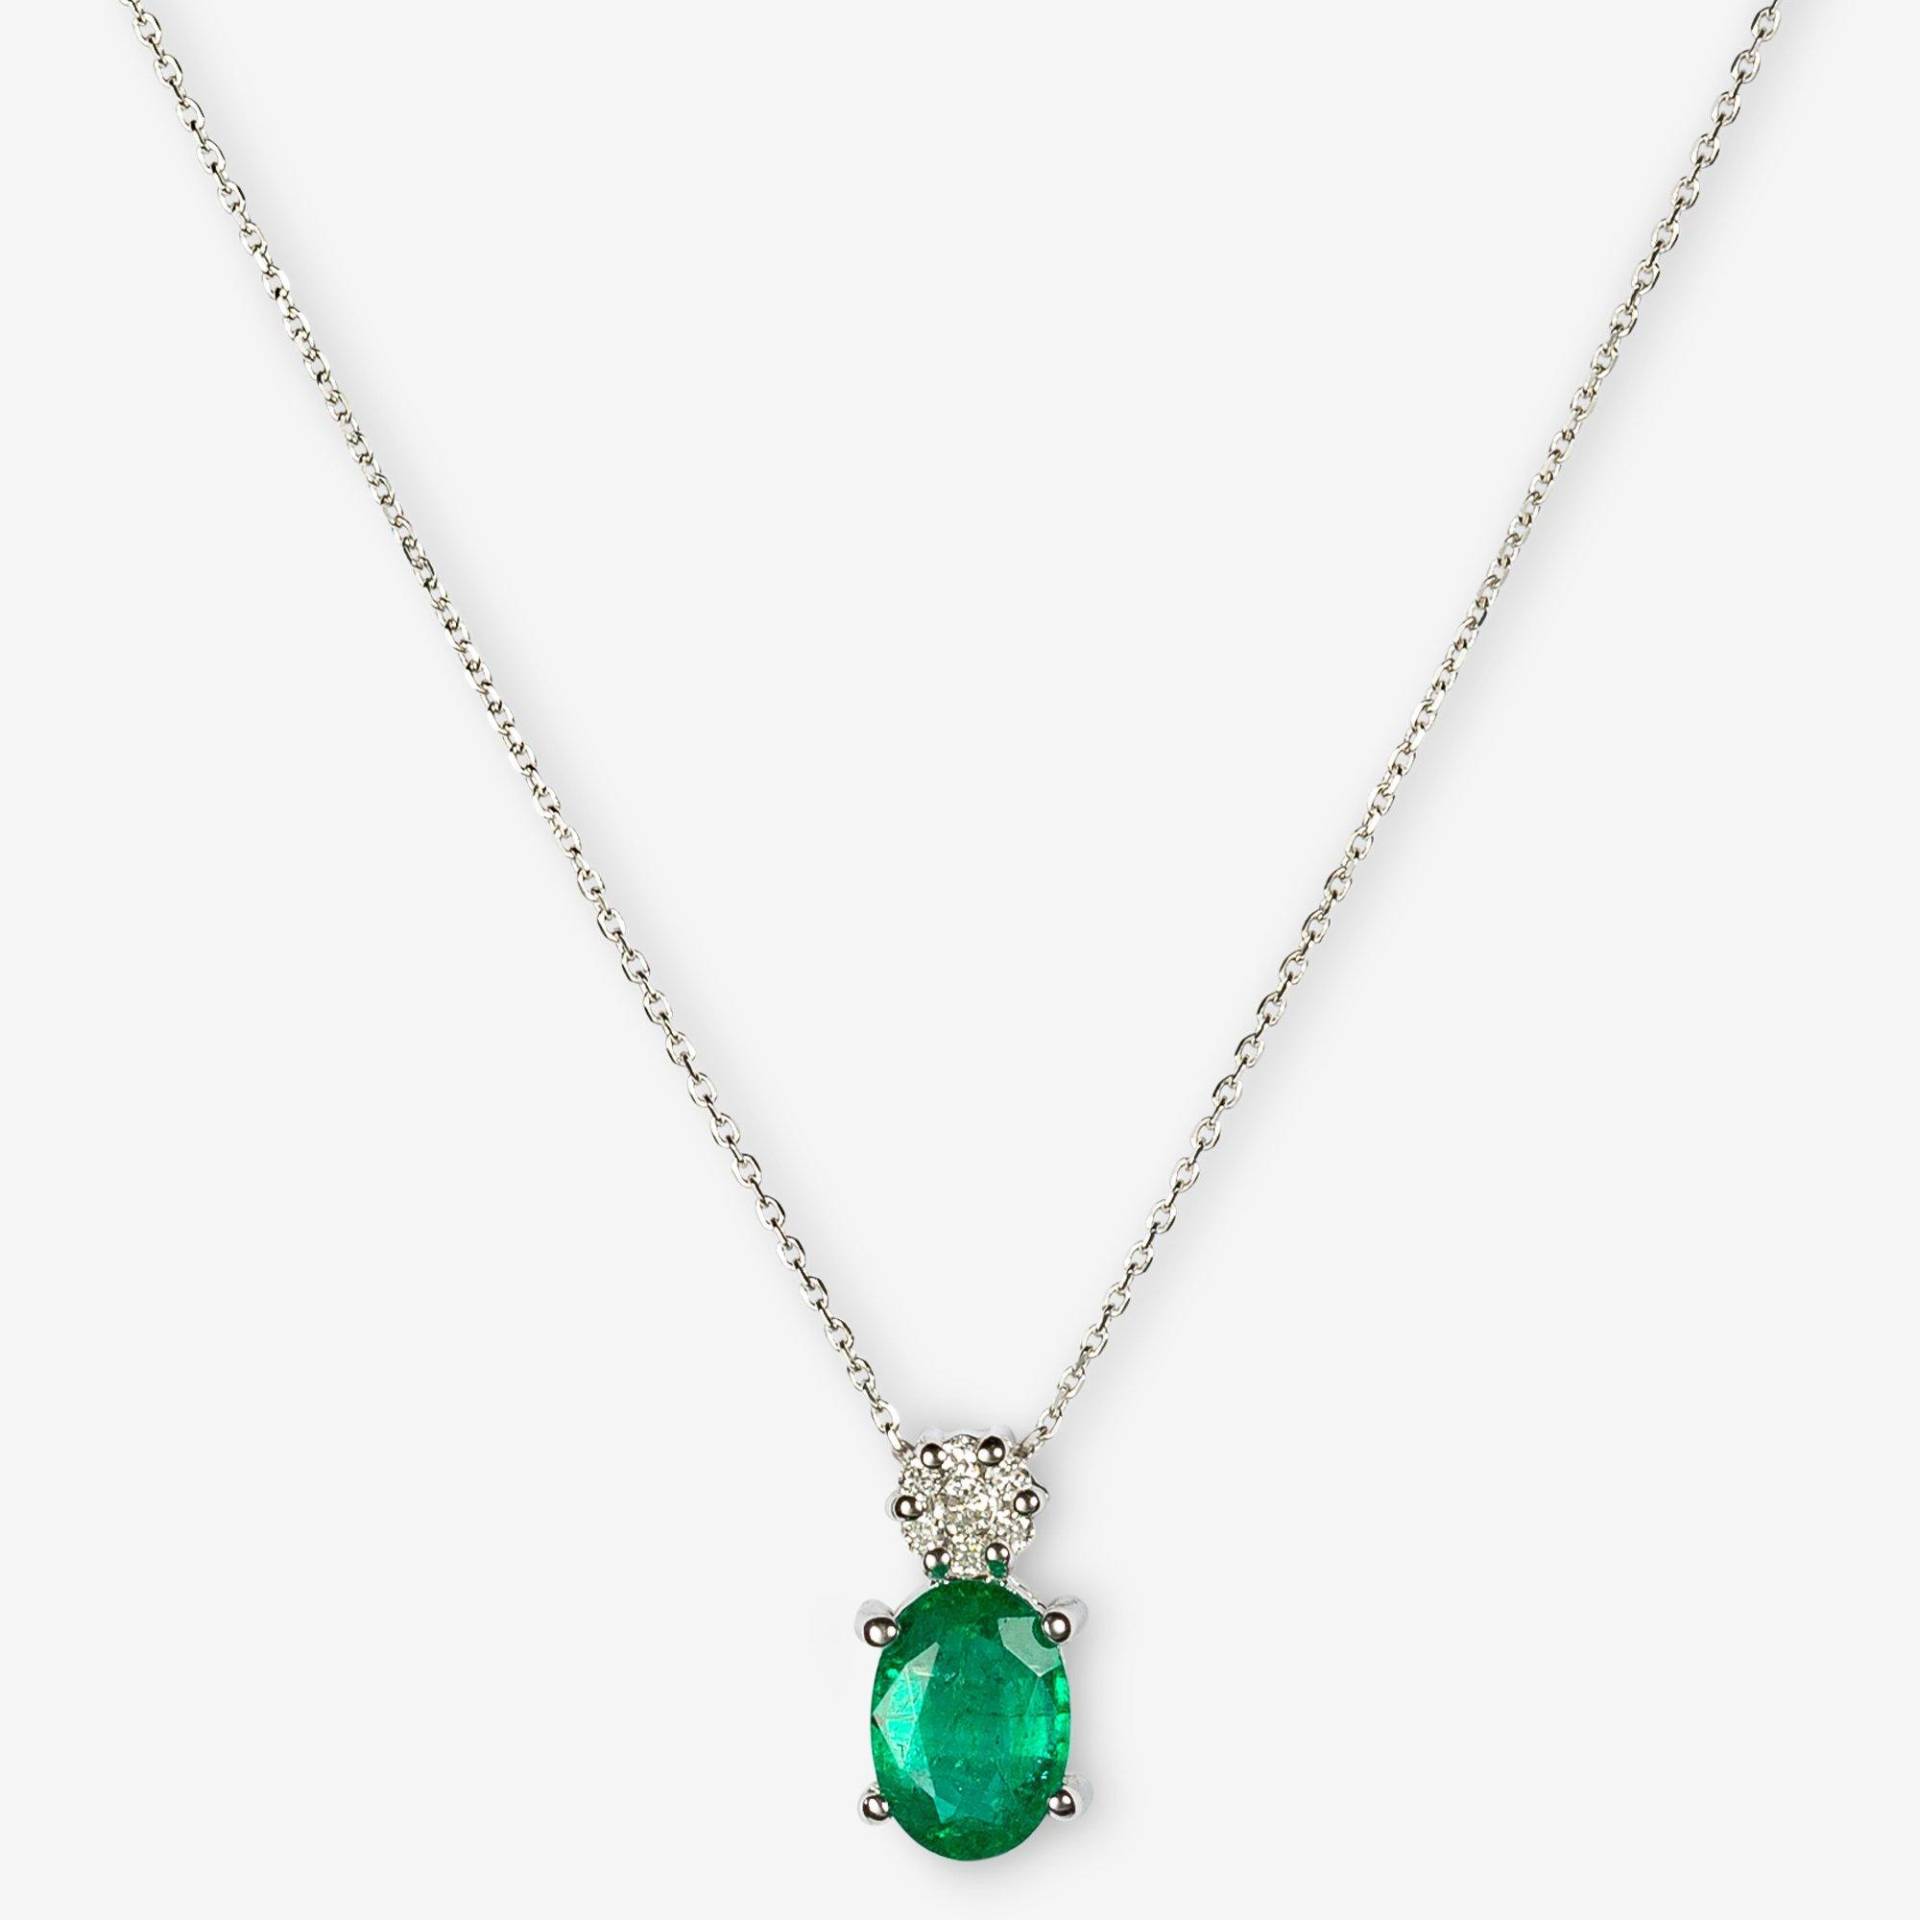 ZEN DIAMOND Halskette Damen Weissgold 45cm von Zen Diamond